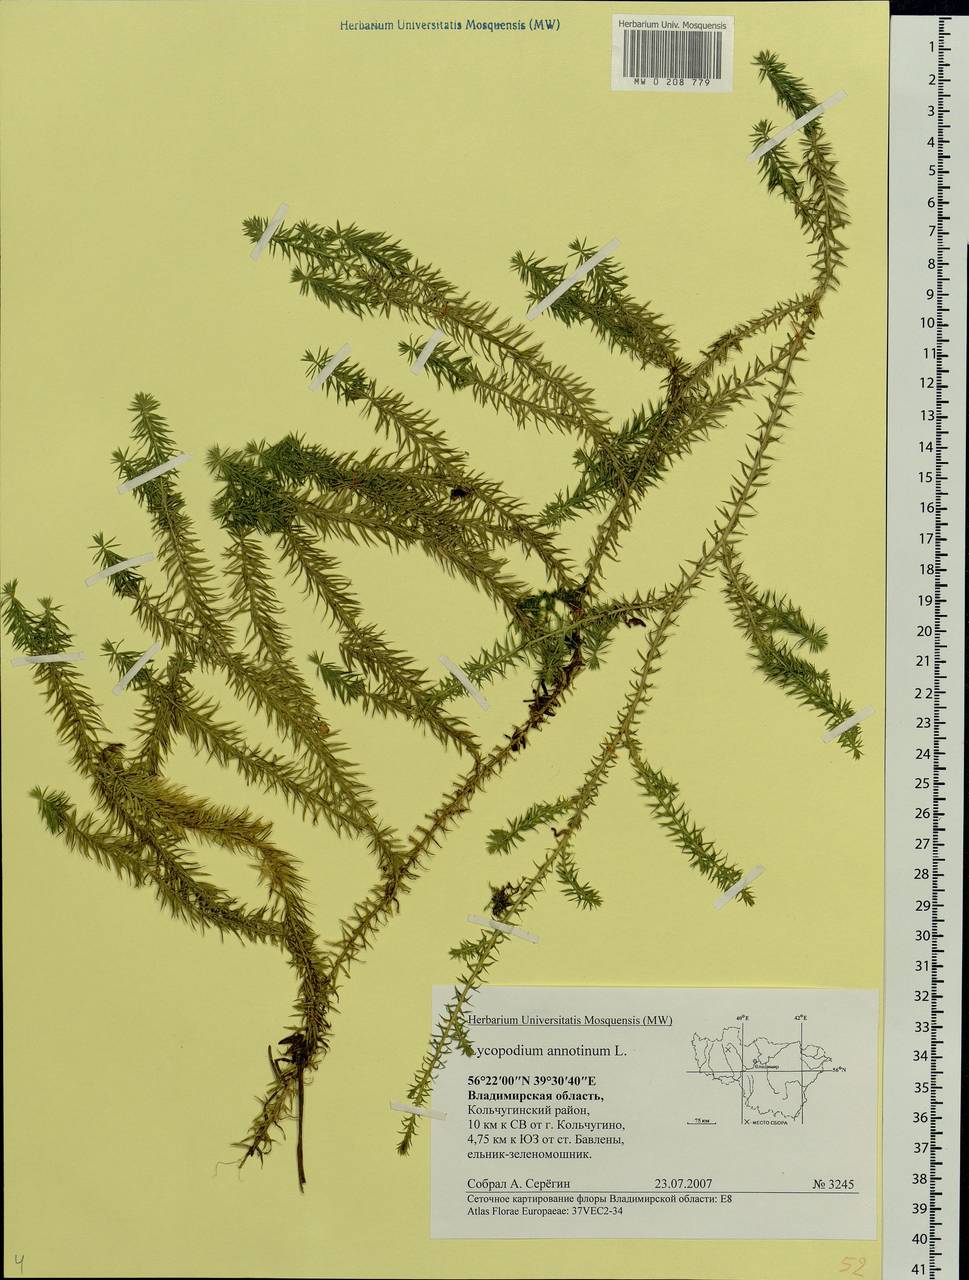 Spinulum annotinum subsp. annotinum, Eastern Europe, Central region (E4) (Russia)